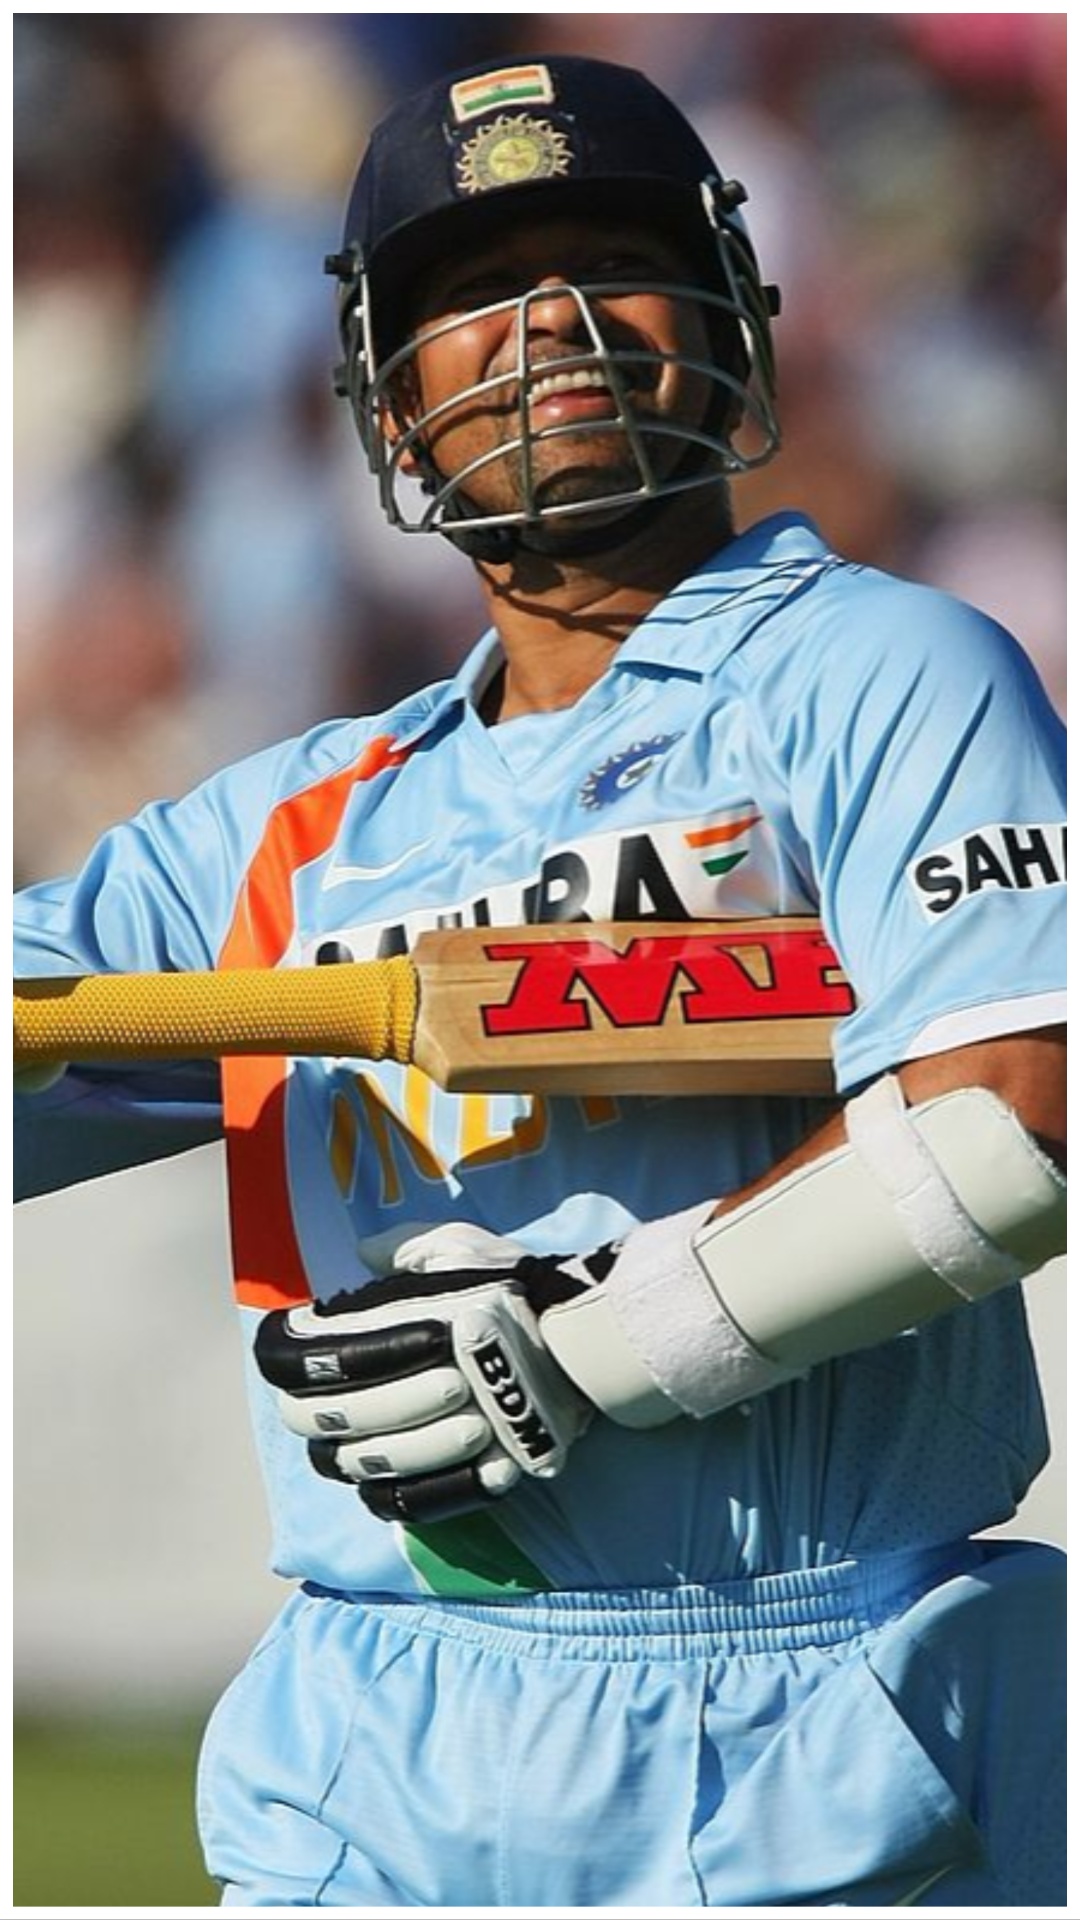 सबसे ज्यादा इंटरनेशनल मैच जीतने वाले खिलाड़ी, सचिन तेंदुलकर के बराबर पहुंचे रोहित शर्मा 